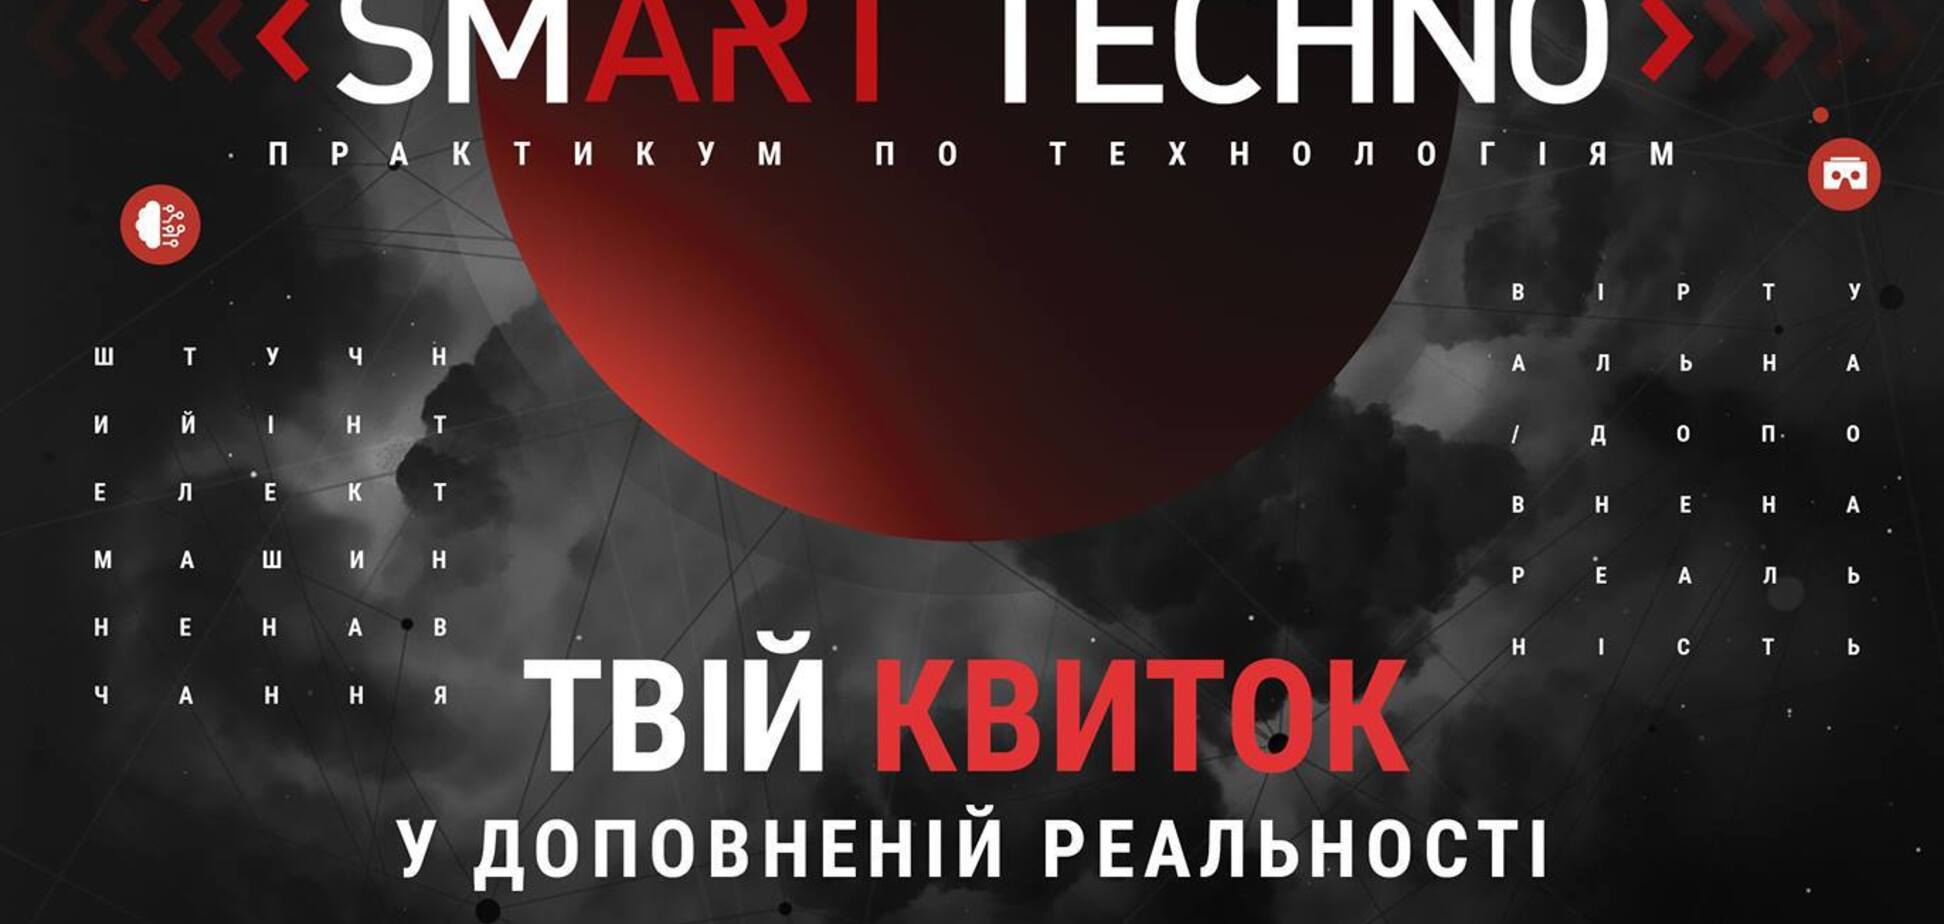 SMART TECHNO 2017: Практикум по технологиям 